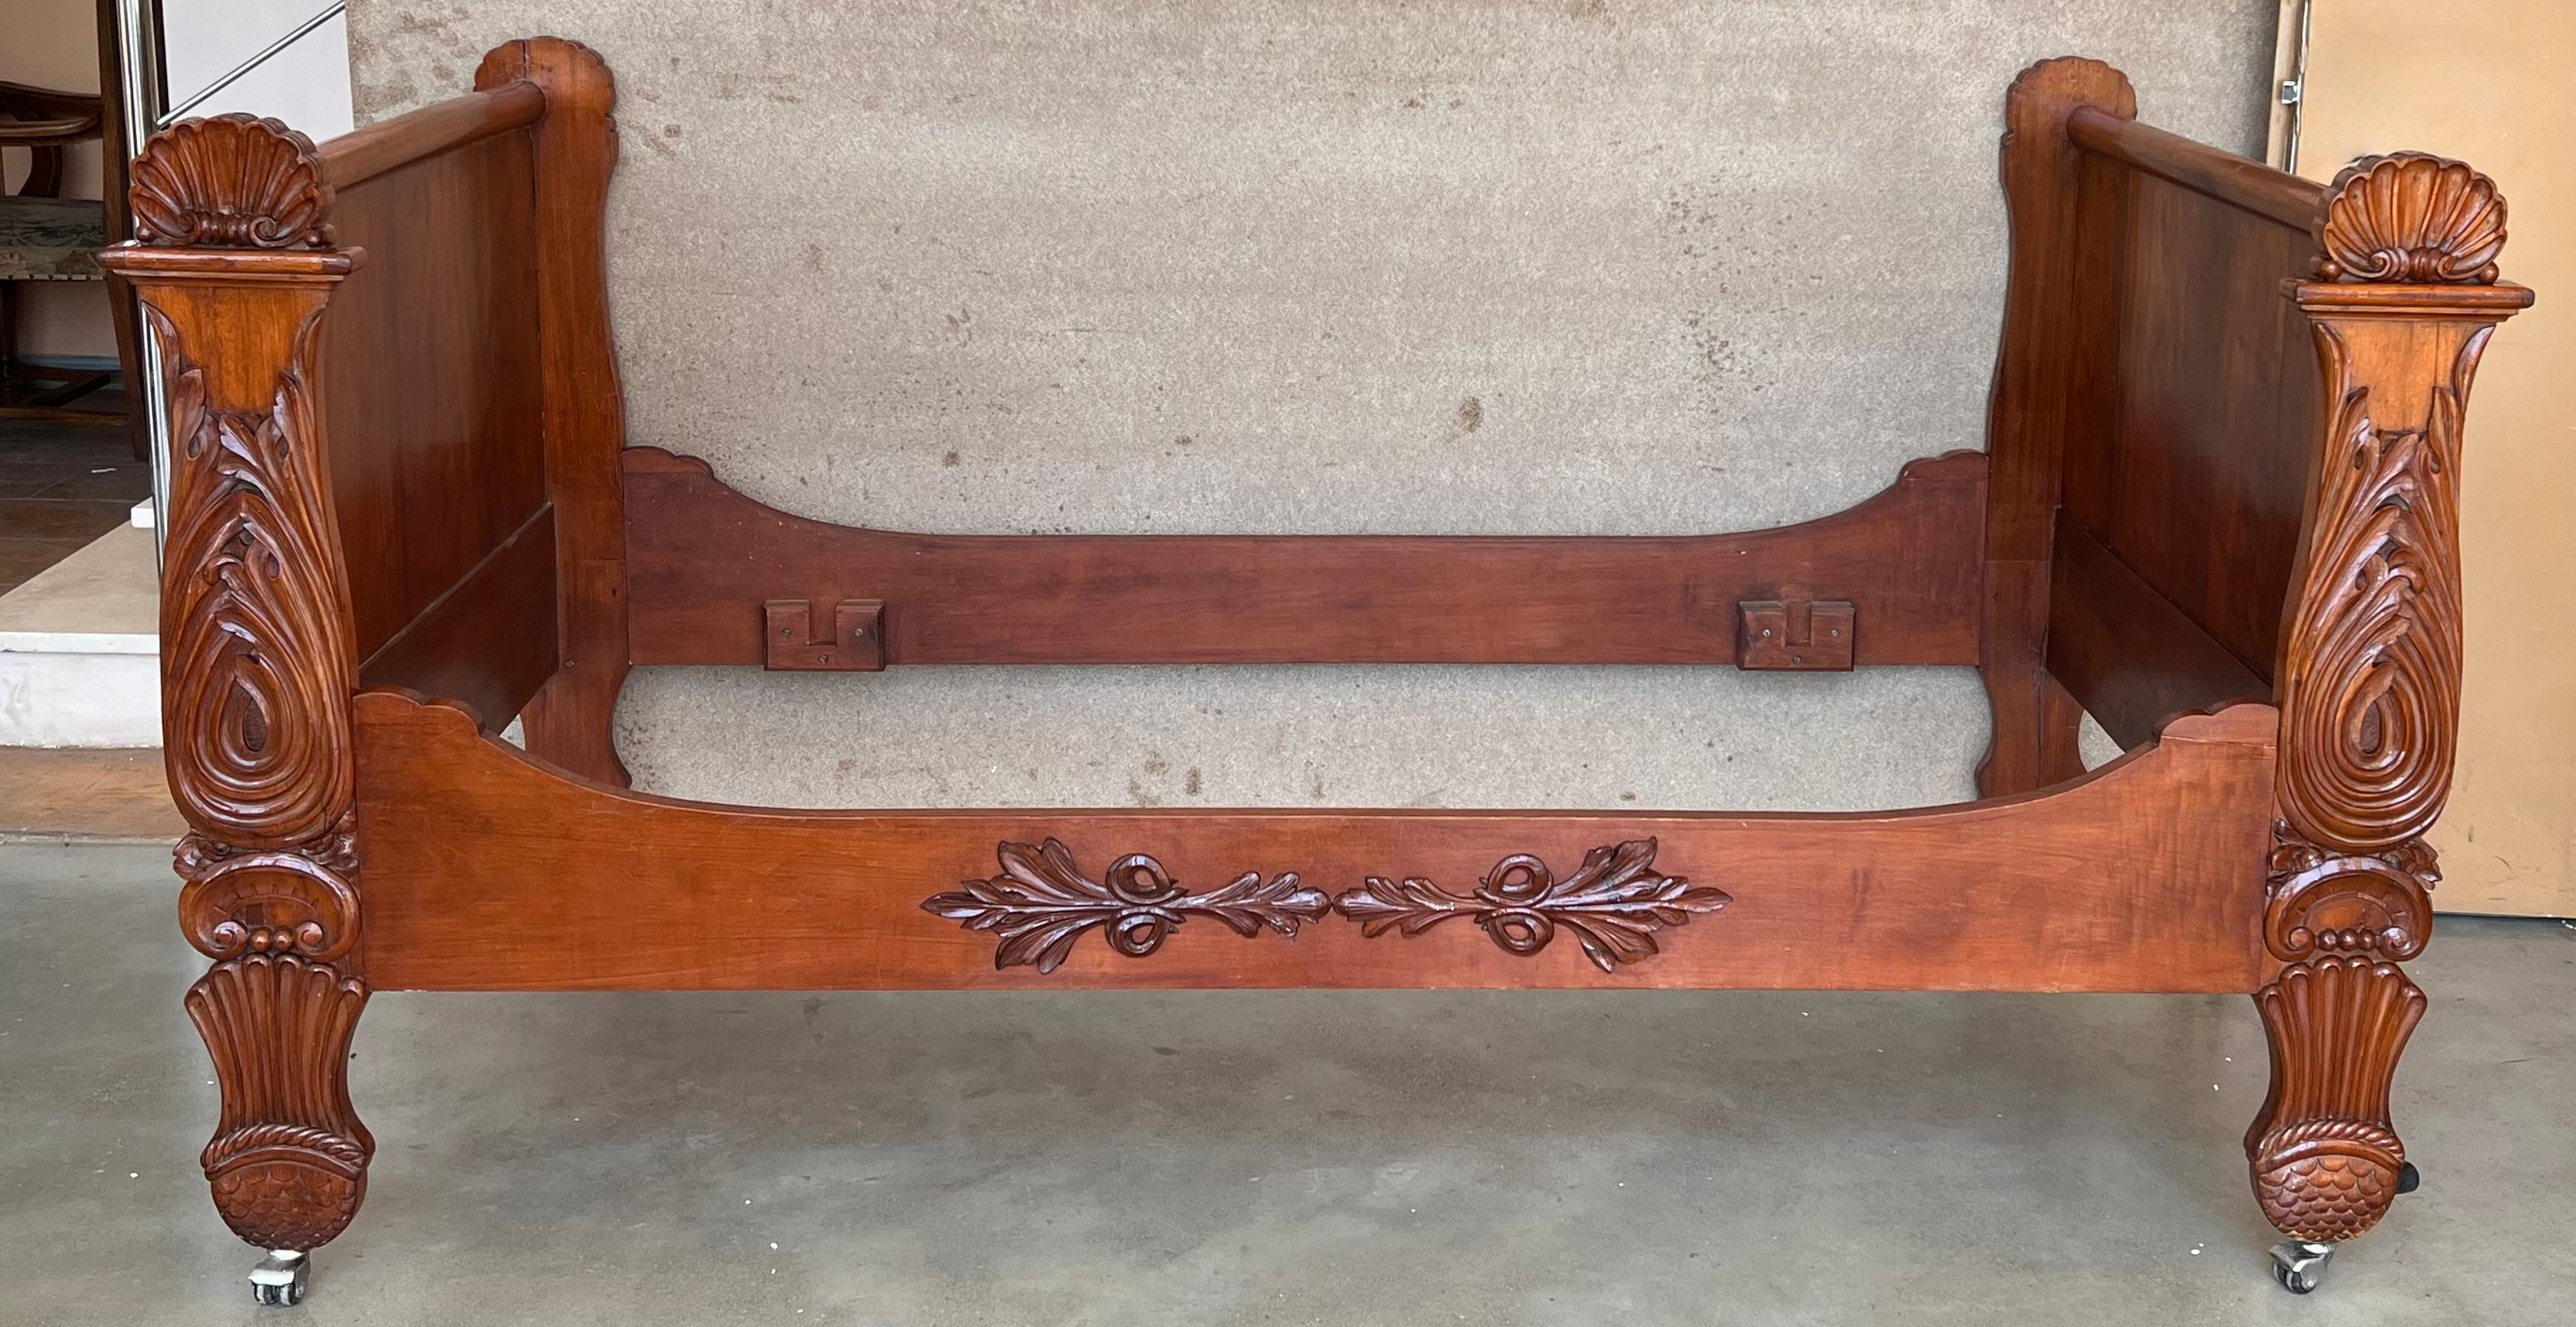 Schöne Boot Bett in Mahagoni geschnitzt Louis Philippe Zeitraum. Dank seiner geringen Abmessungen kann er auch als Sitzbank verwendet werden. Die vier Beine sind mit Rollen ausgestattet, wodurch er sich leicht bewegen lässt. 

Matratze: Full Doble